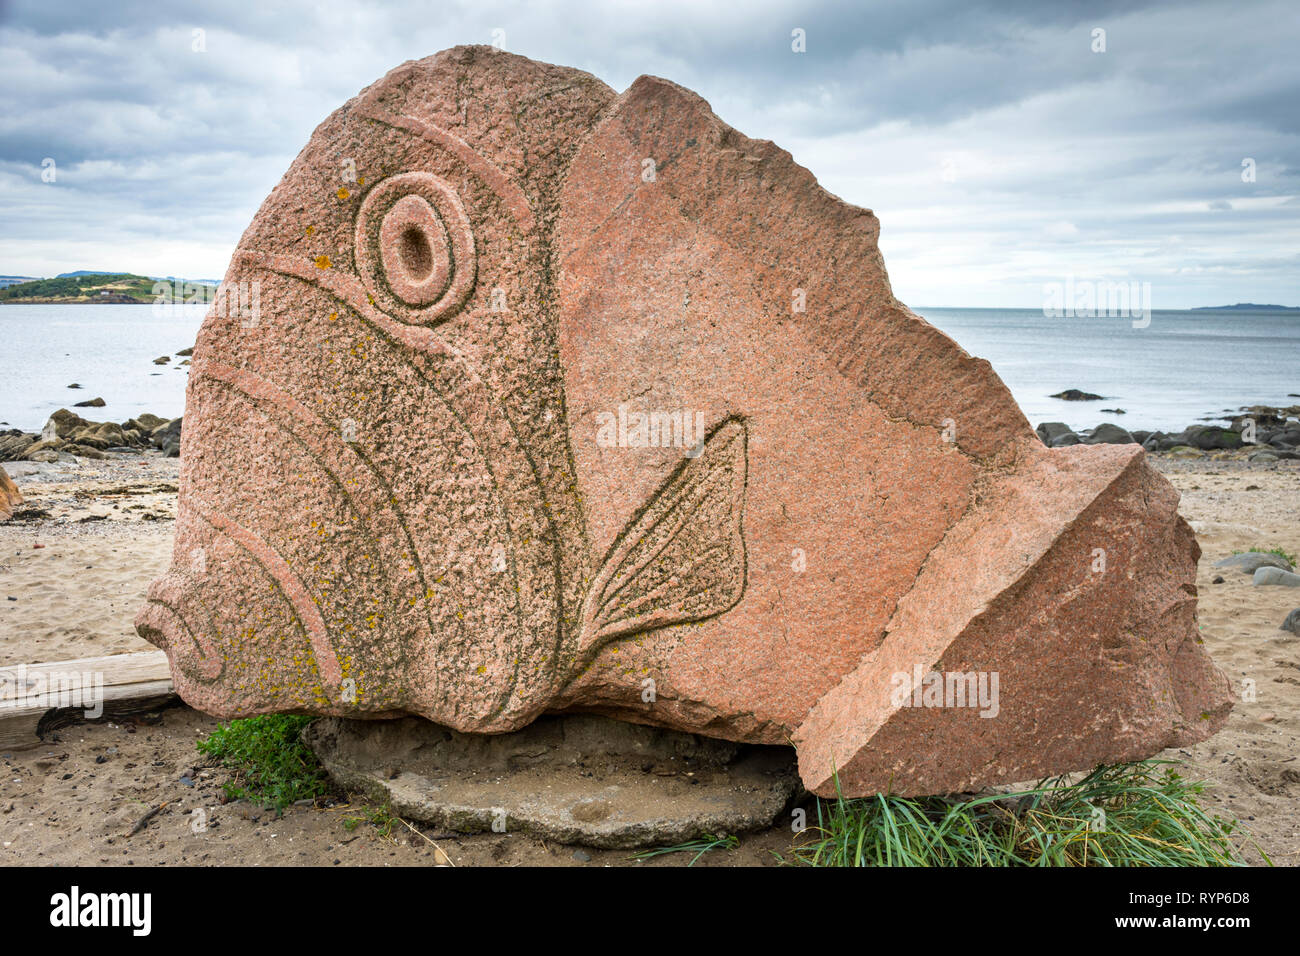 Le poisson Cramond, une sculpture par Ronald Rae, Cramond, Édimbourg, Écosse, Royaume-Uni Banque D'Images